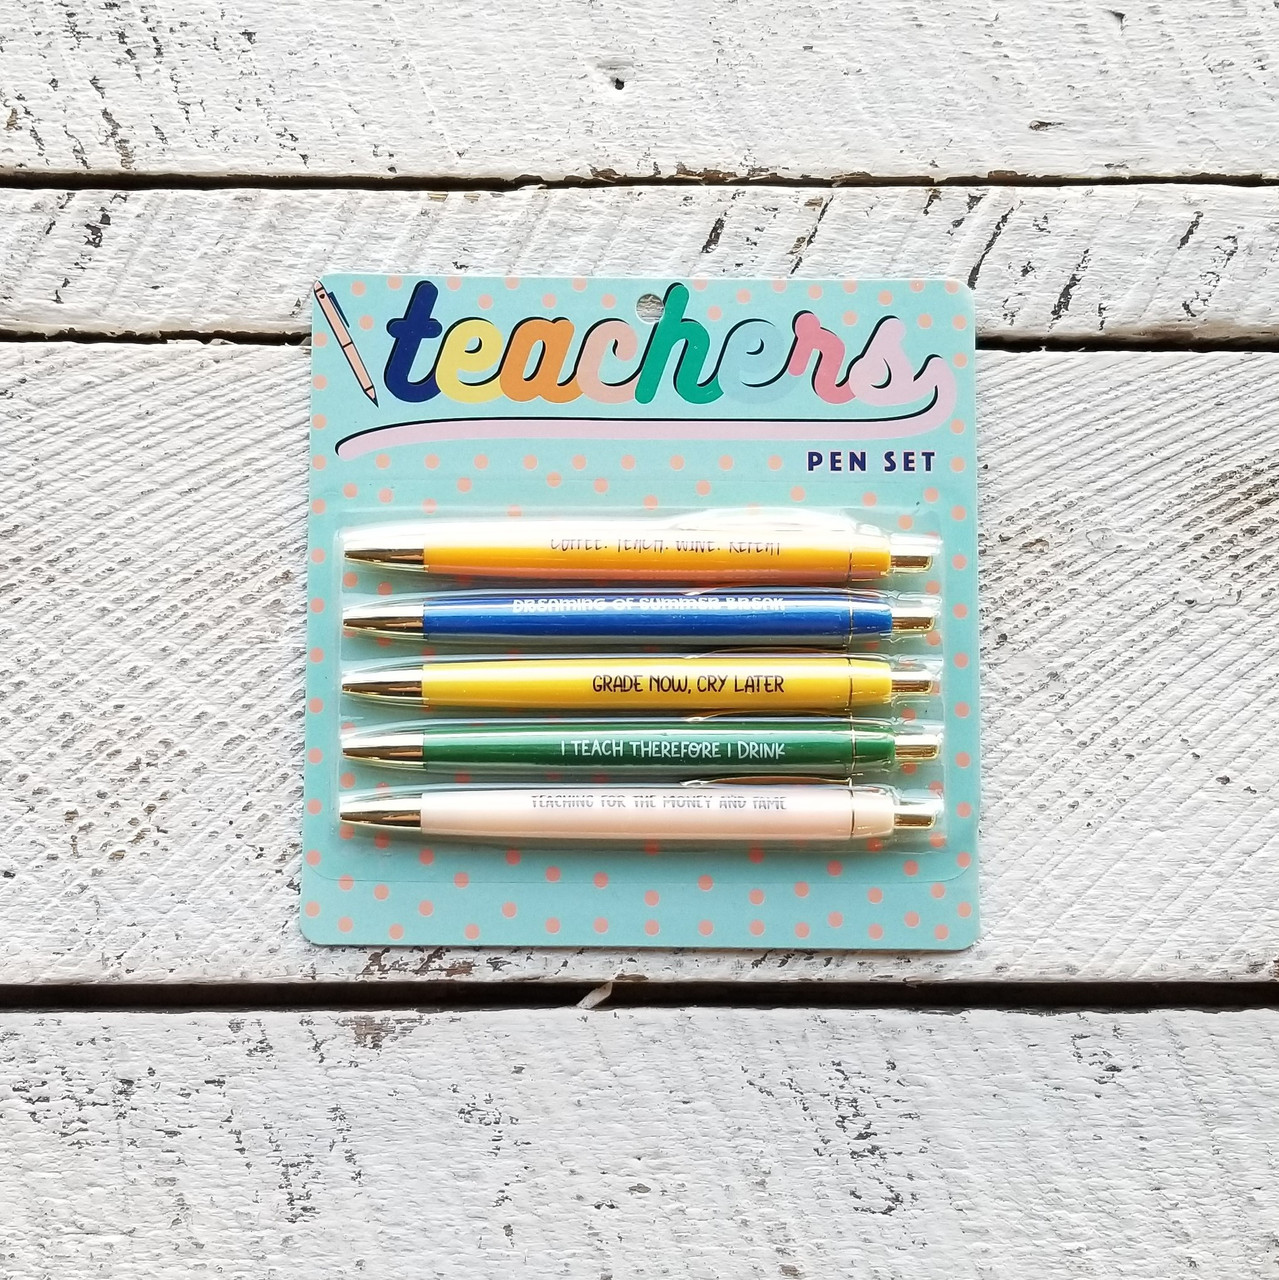 The Teacher Pen Set